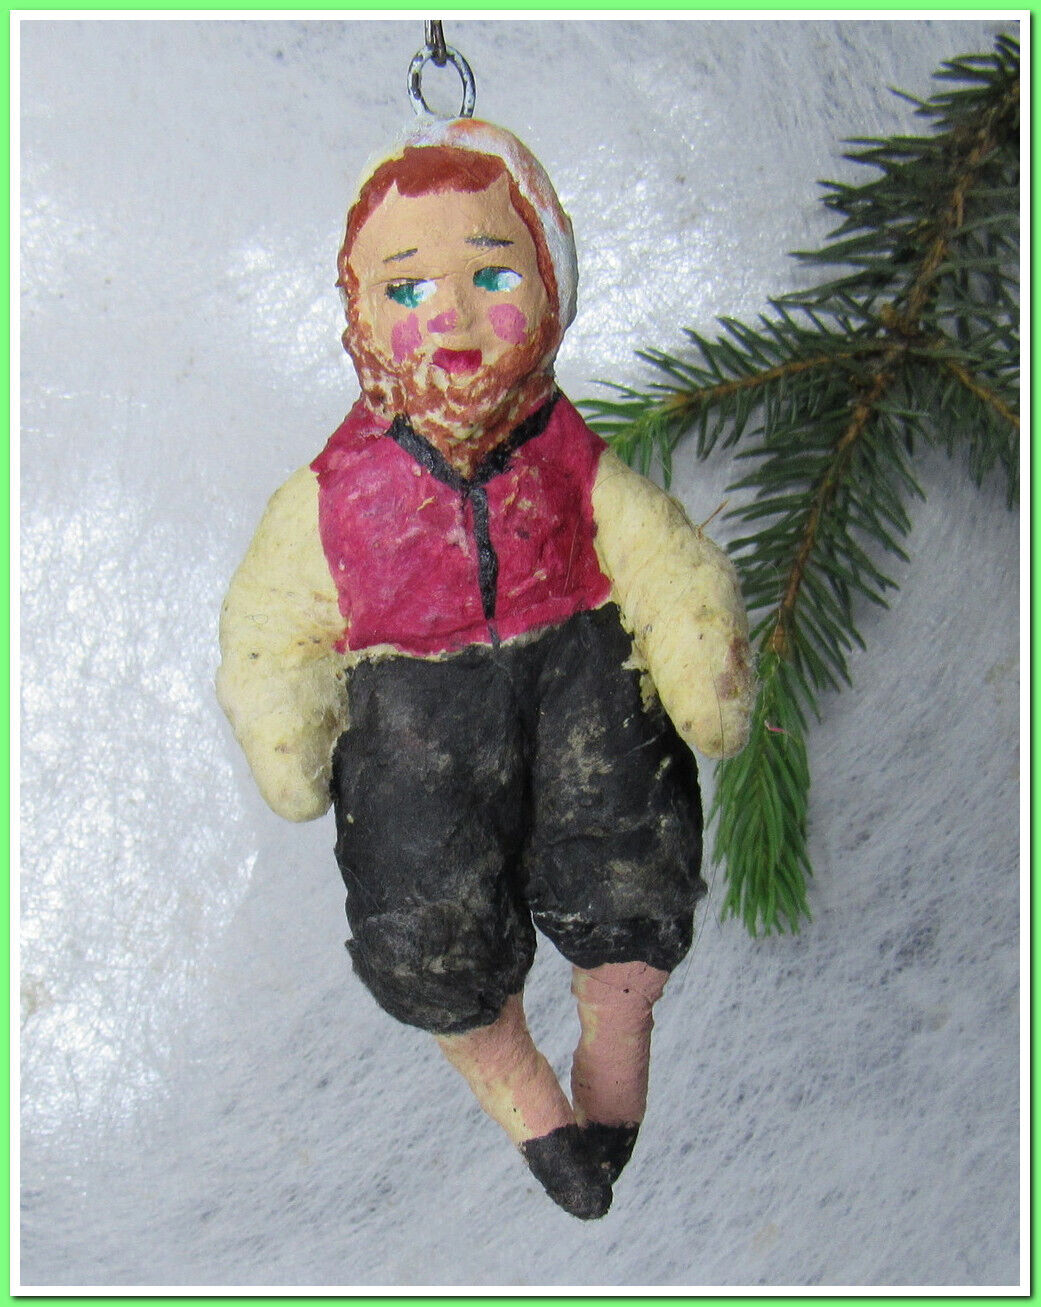 🎄Vintage antique Christmas spun cotton ornament figure #18524